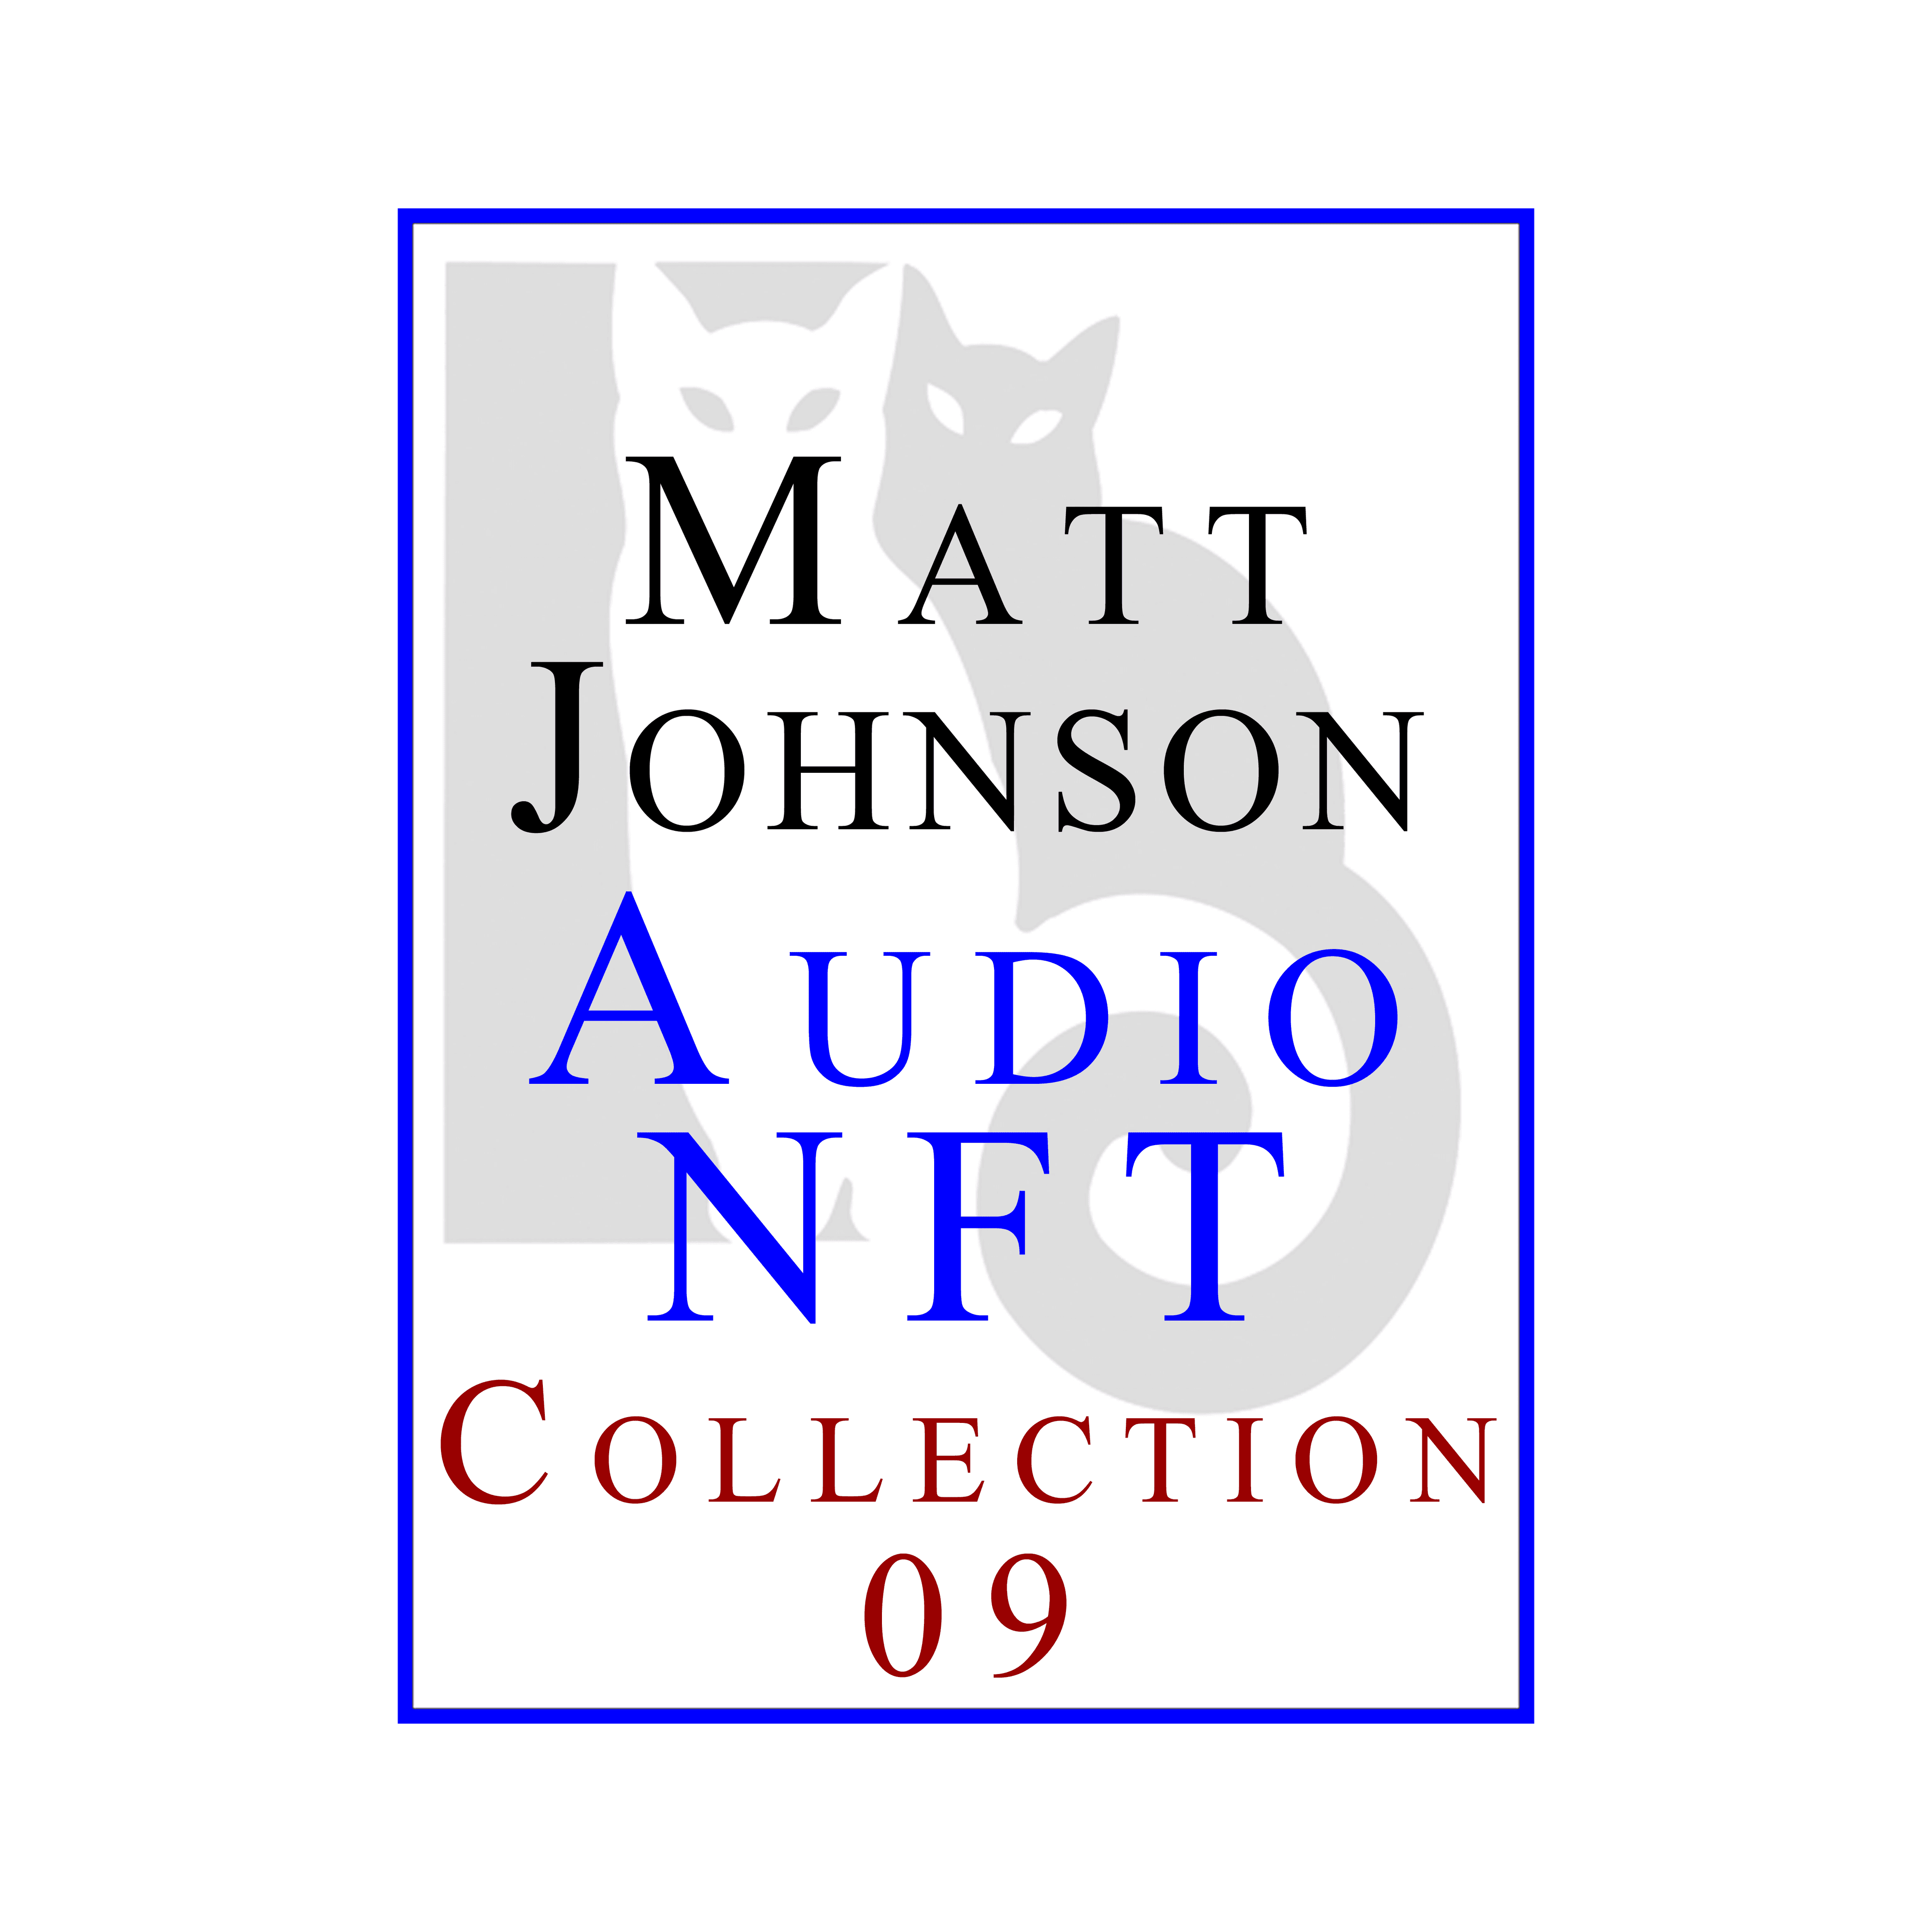 Matt Johnson Audio NFT ~ Collection 09